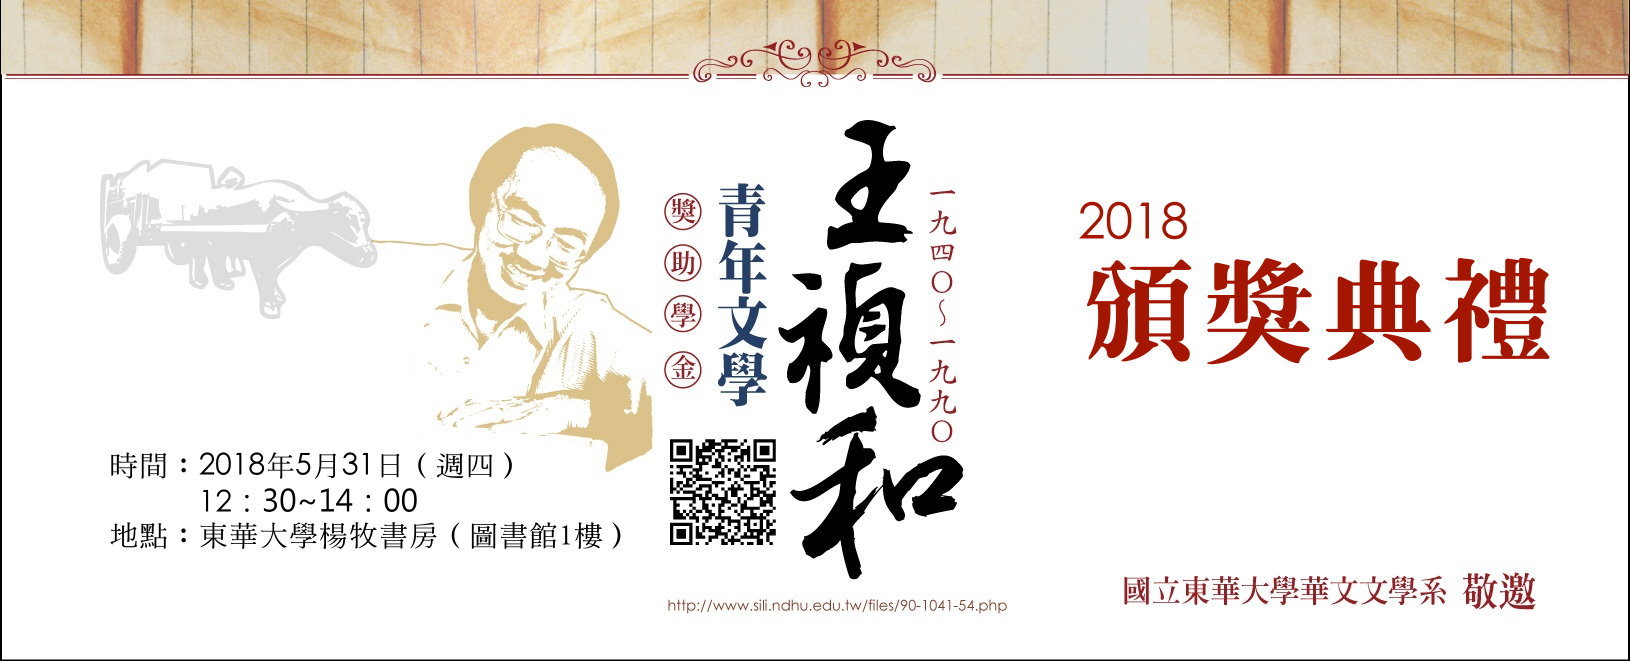 王禎和獎助學金頒獎（2018）